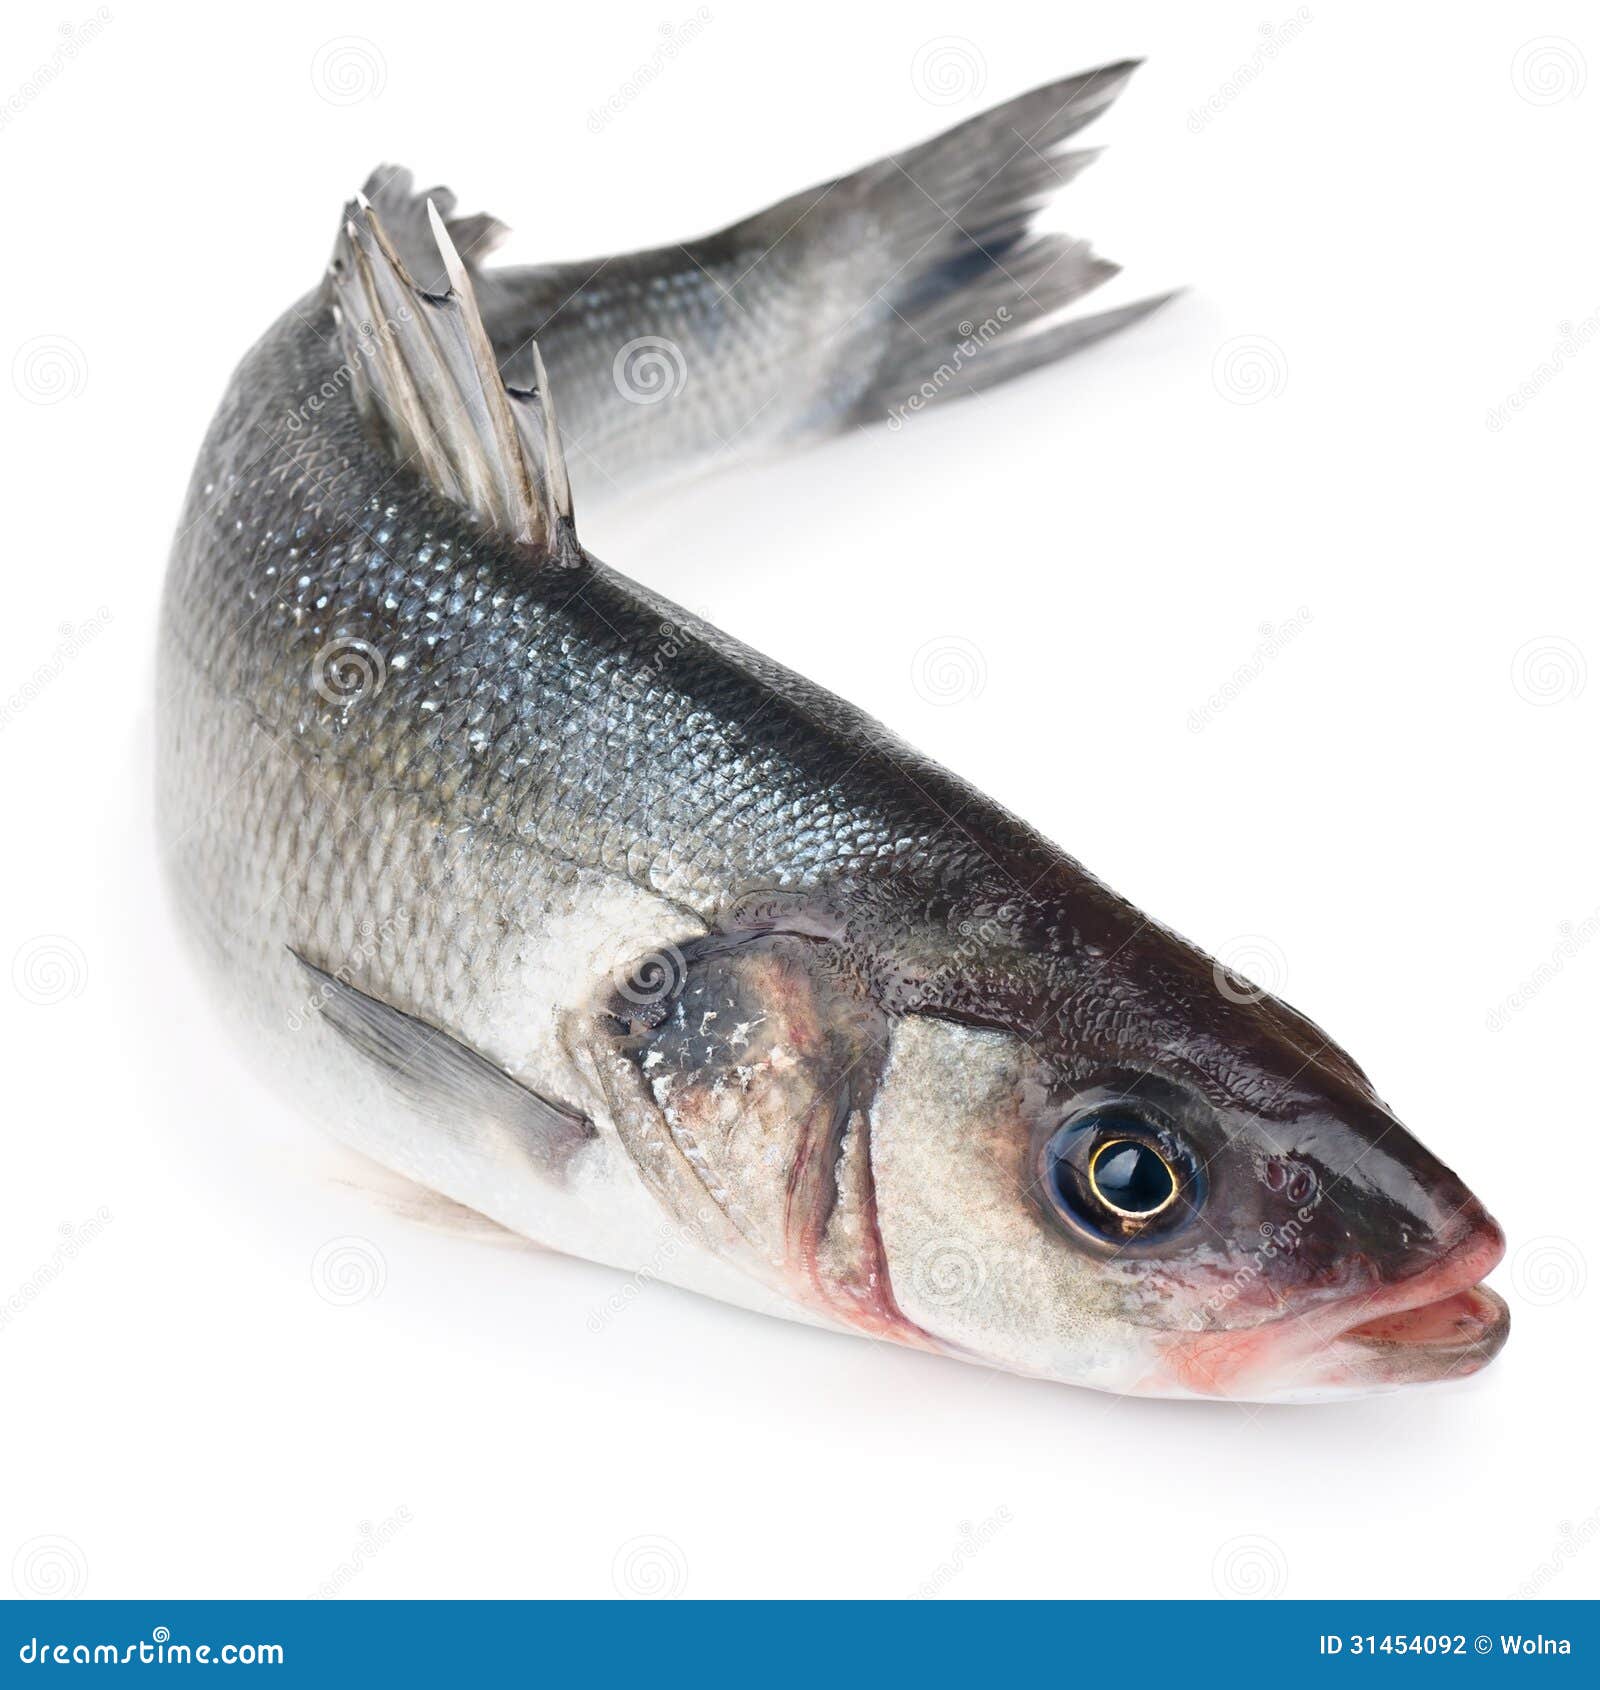 原条龙雪鱼 粗磷油 甘鱼 龙鳕鱼 大马哈鱼龙鳕鱼 一条约8-18斤/条-阿里巴巴